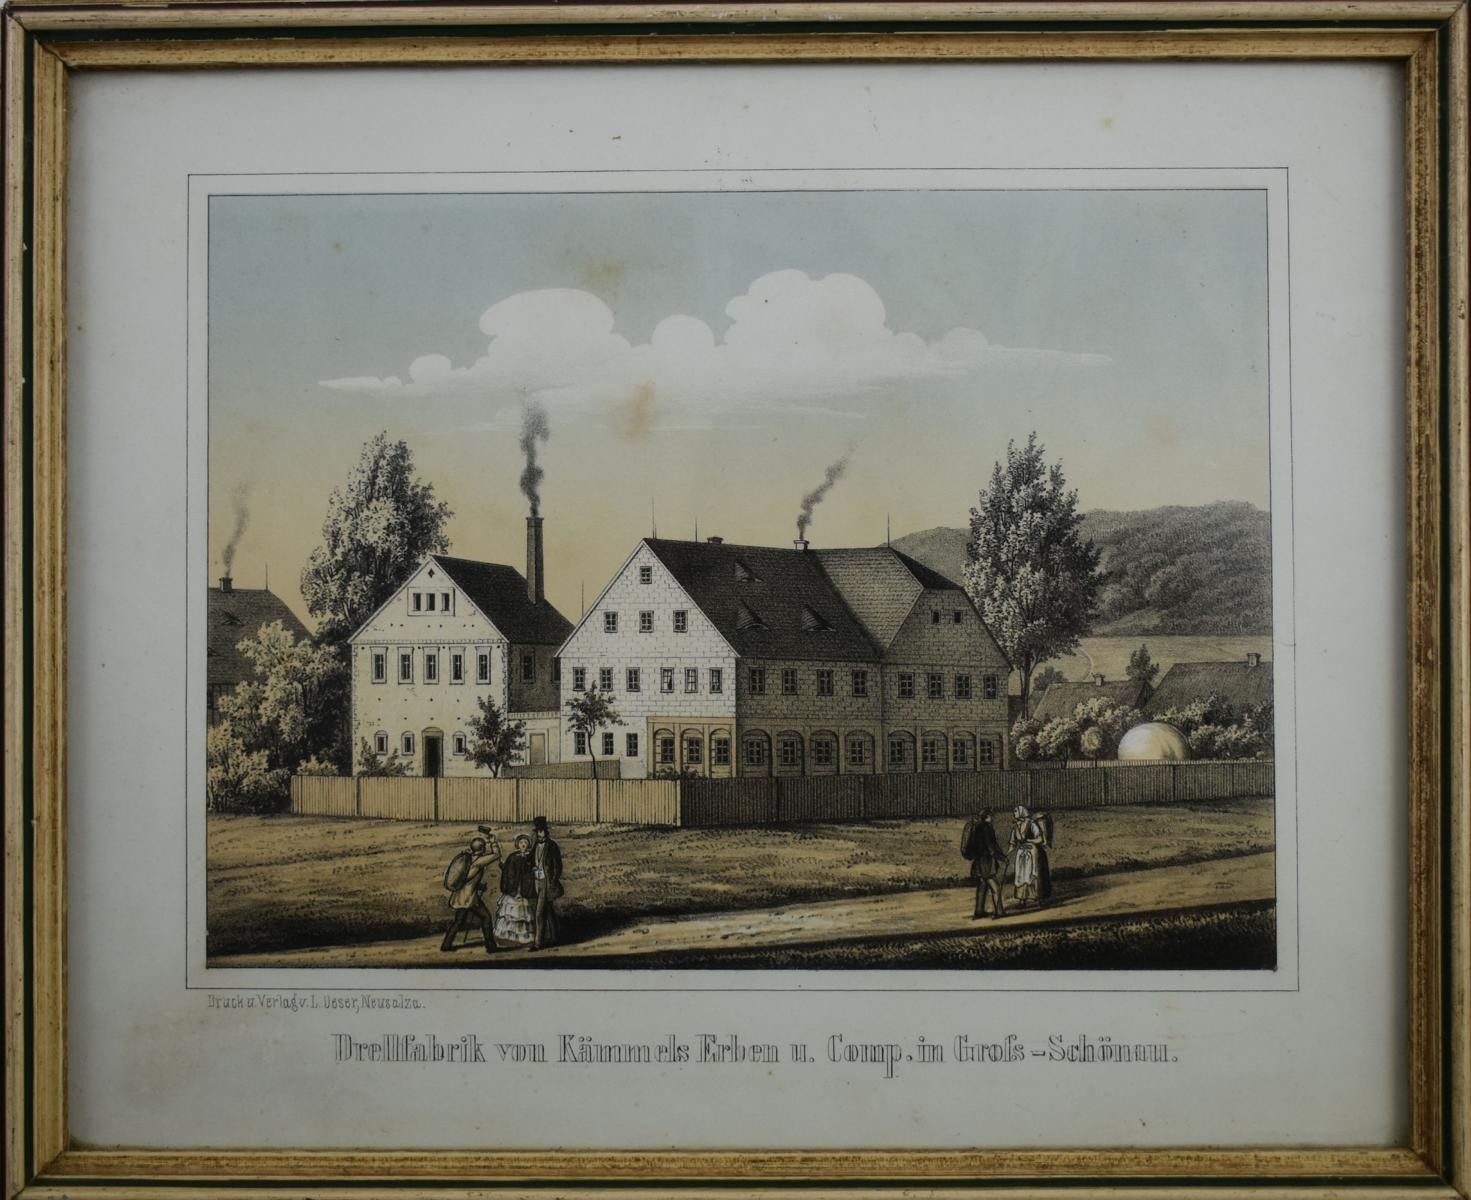 Drellfabrik von Kämmels Erben u. Comp. in Groß-Schönau. (Deutsches Damast- und Frottiermuseum CC BY-NC-ND)